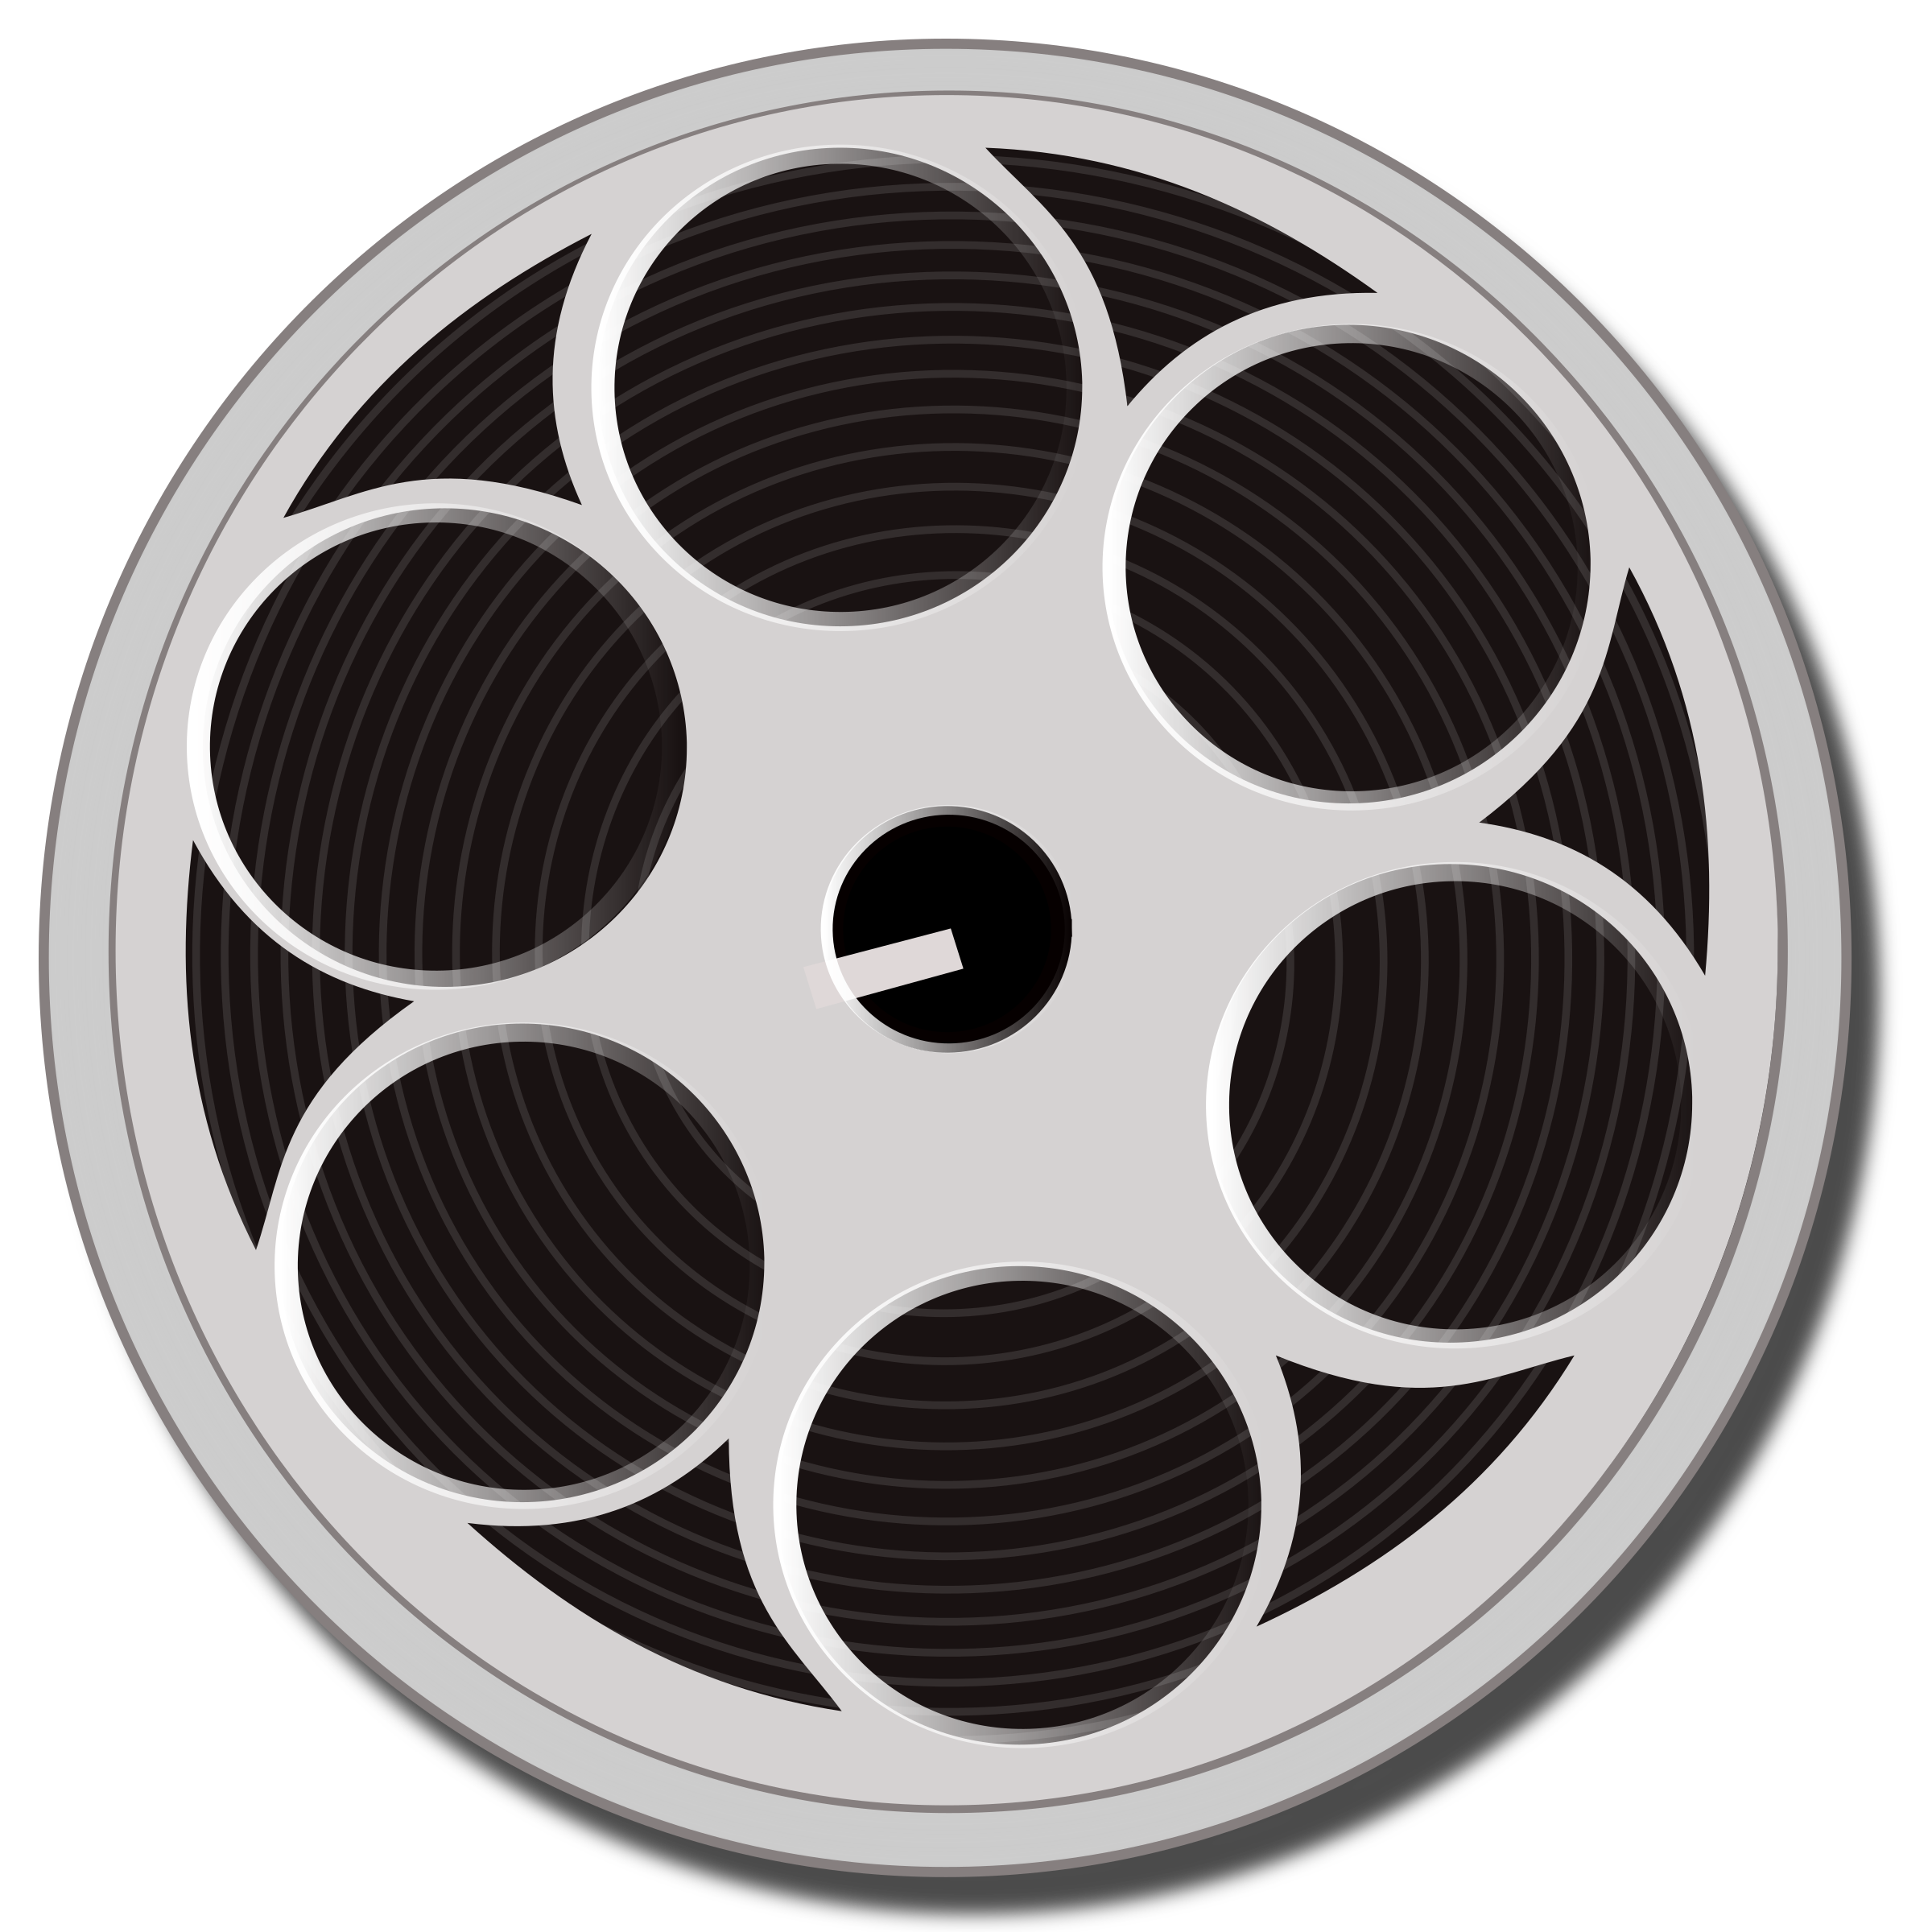 Movie reel clipart film reel